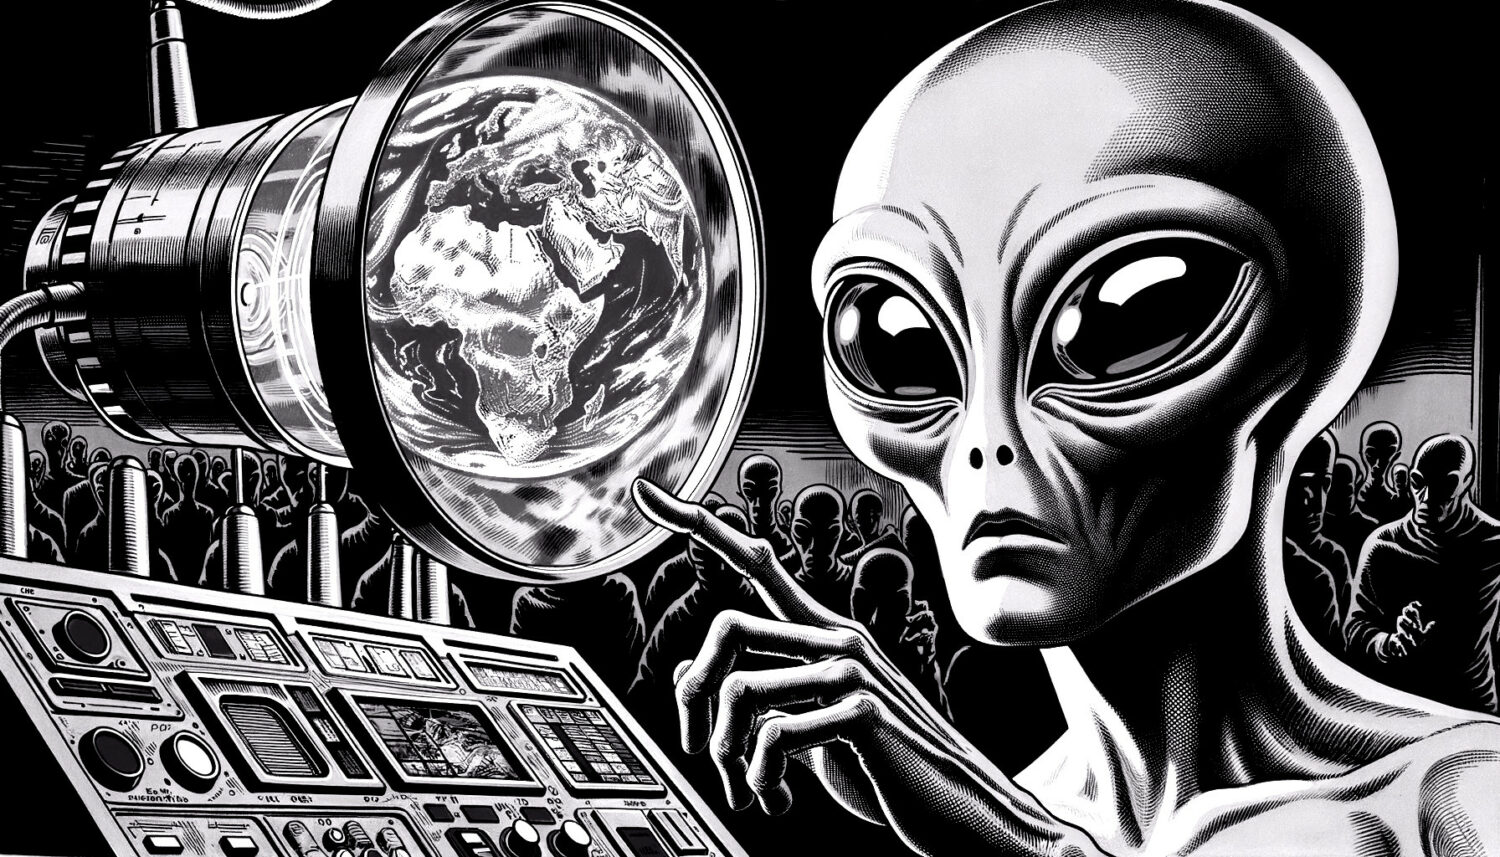 Simulieren Aliens unsere Realität?